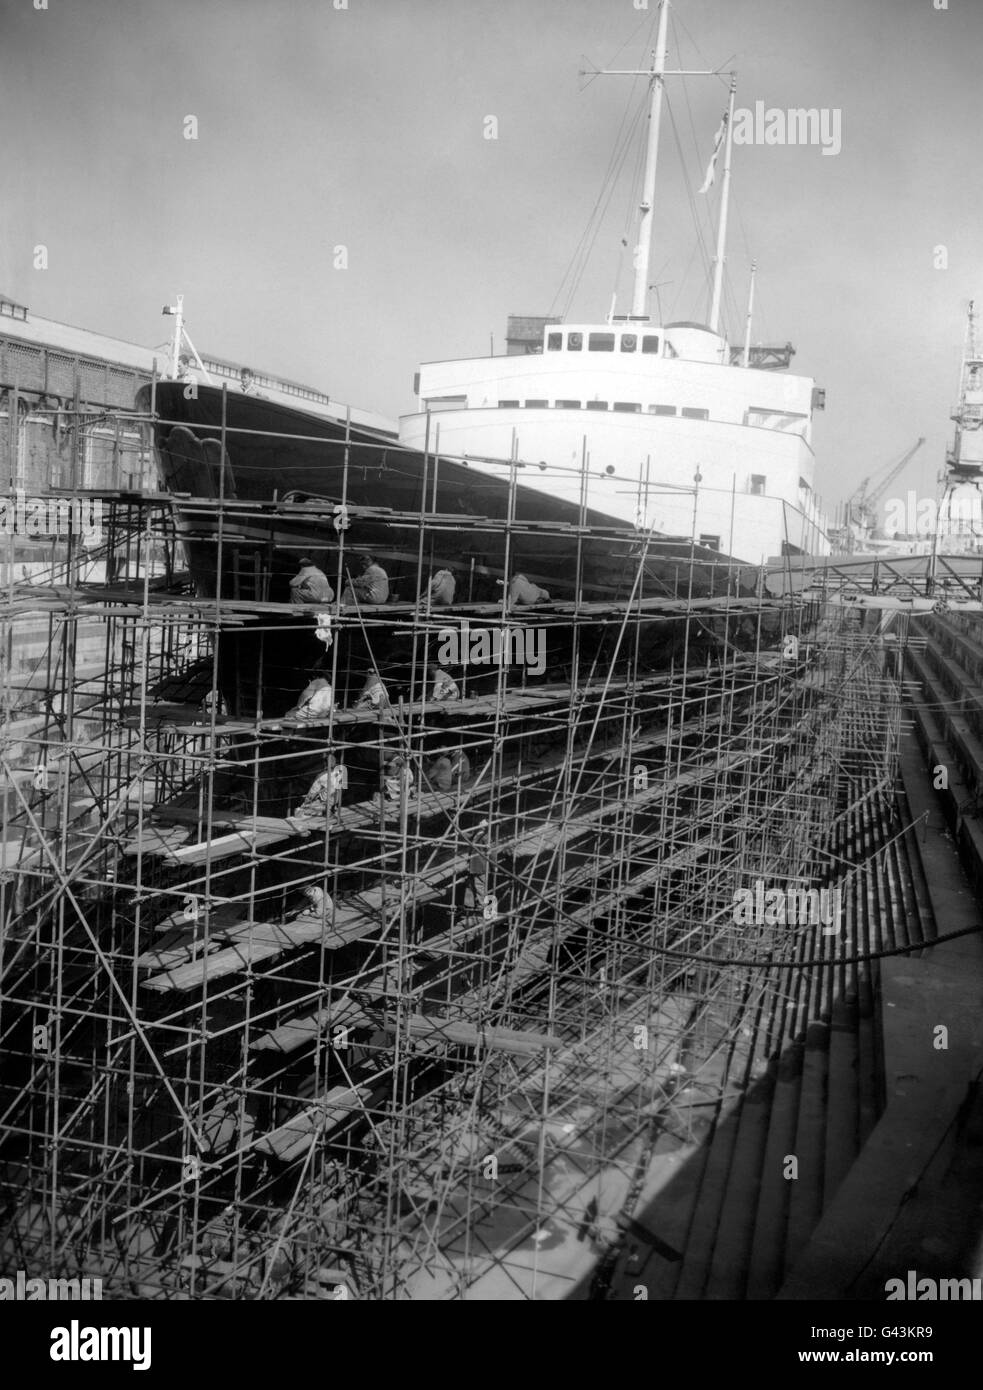 Die Royal Yacht Britannia in Gerüst eingeschlossen, wie die Arbeit an der Malerei ihres Rumpfes in Trockendock in Portsmouth Dockyard, bereit, zur Verfügung der Prinzessin Margaret und Antony Armstrong-Jones nach ihrer Hochzeit gestellt werden. Stockfoto